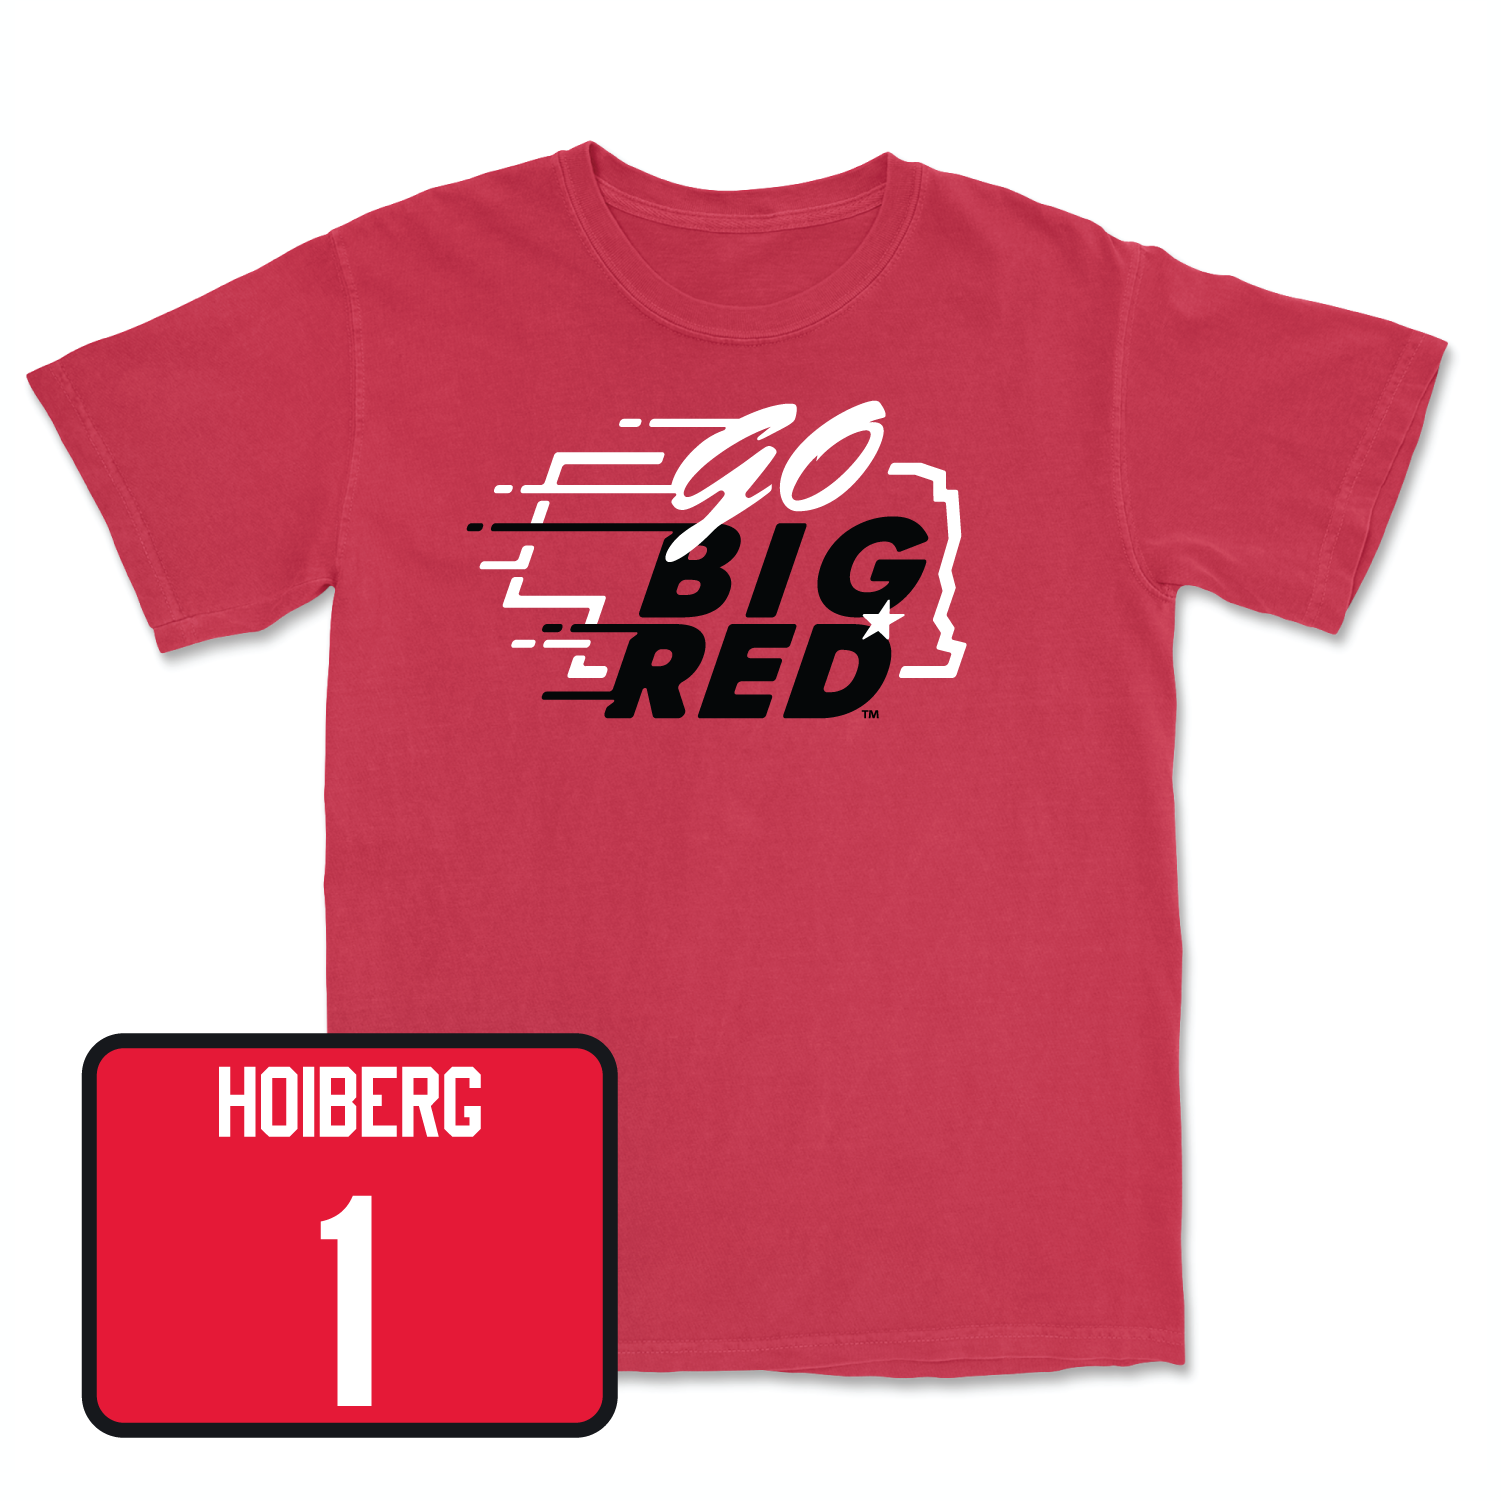 Red Men's Basketball GBR Tee 2X-Large / Samuel Hoiberg | #1